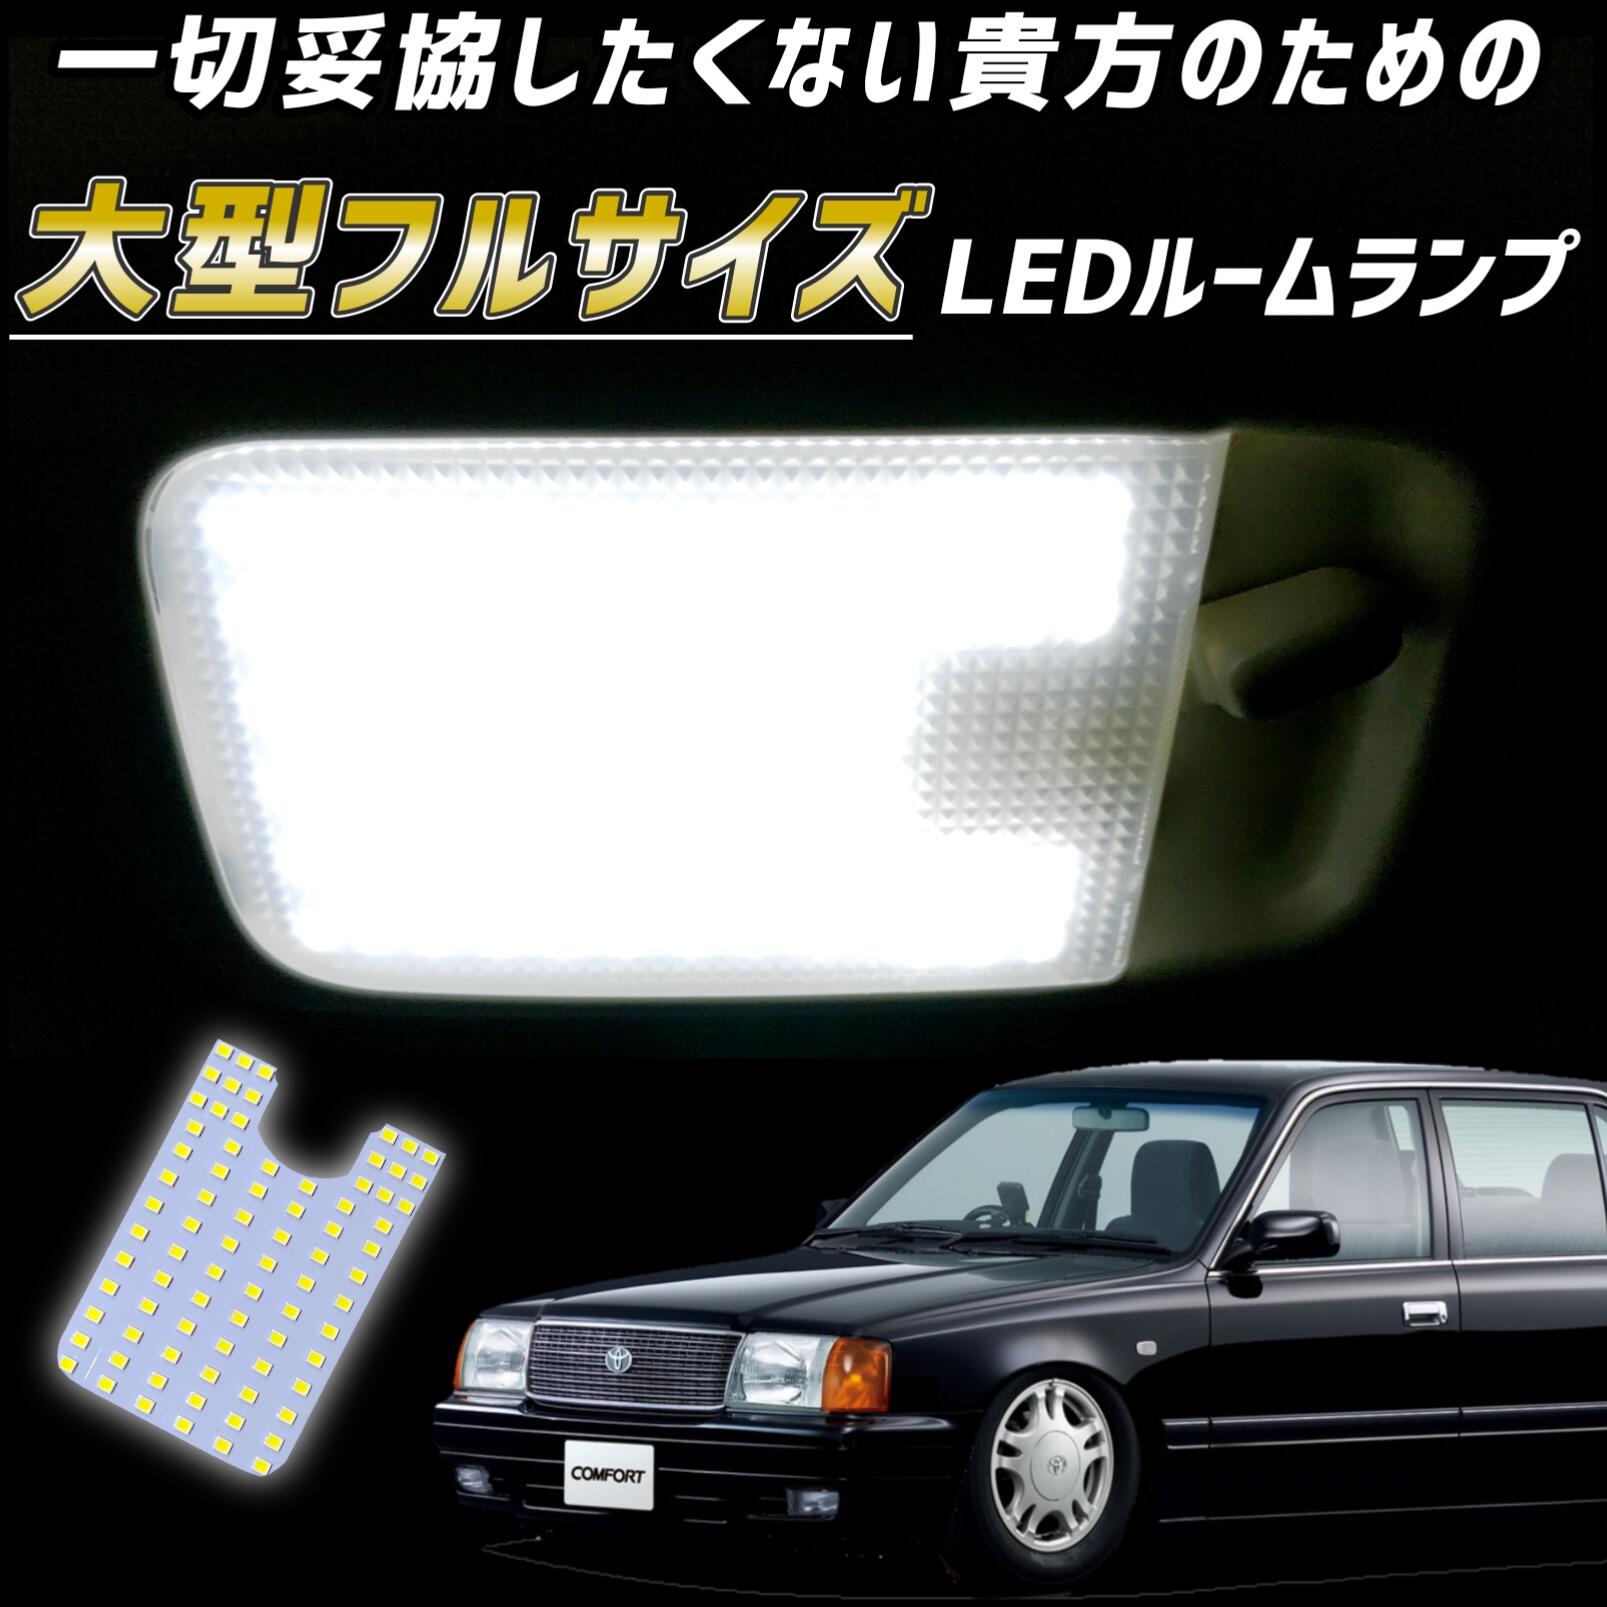 トヨタ コンフォート LEDルームランプ タクシー 教習車 完全専用設計LEDルームライト 天井 中央 真ん中 TSS YXS GXS LXS SXS 10 11 13 爆光 明るい 眩しい 白色 ホワイト 昼白色